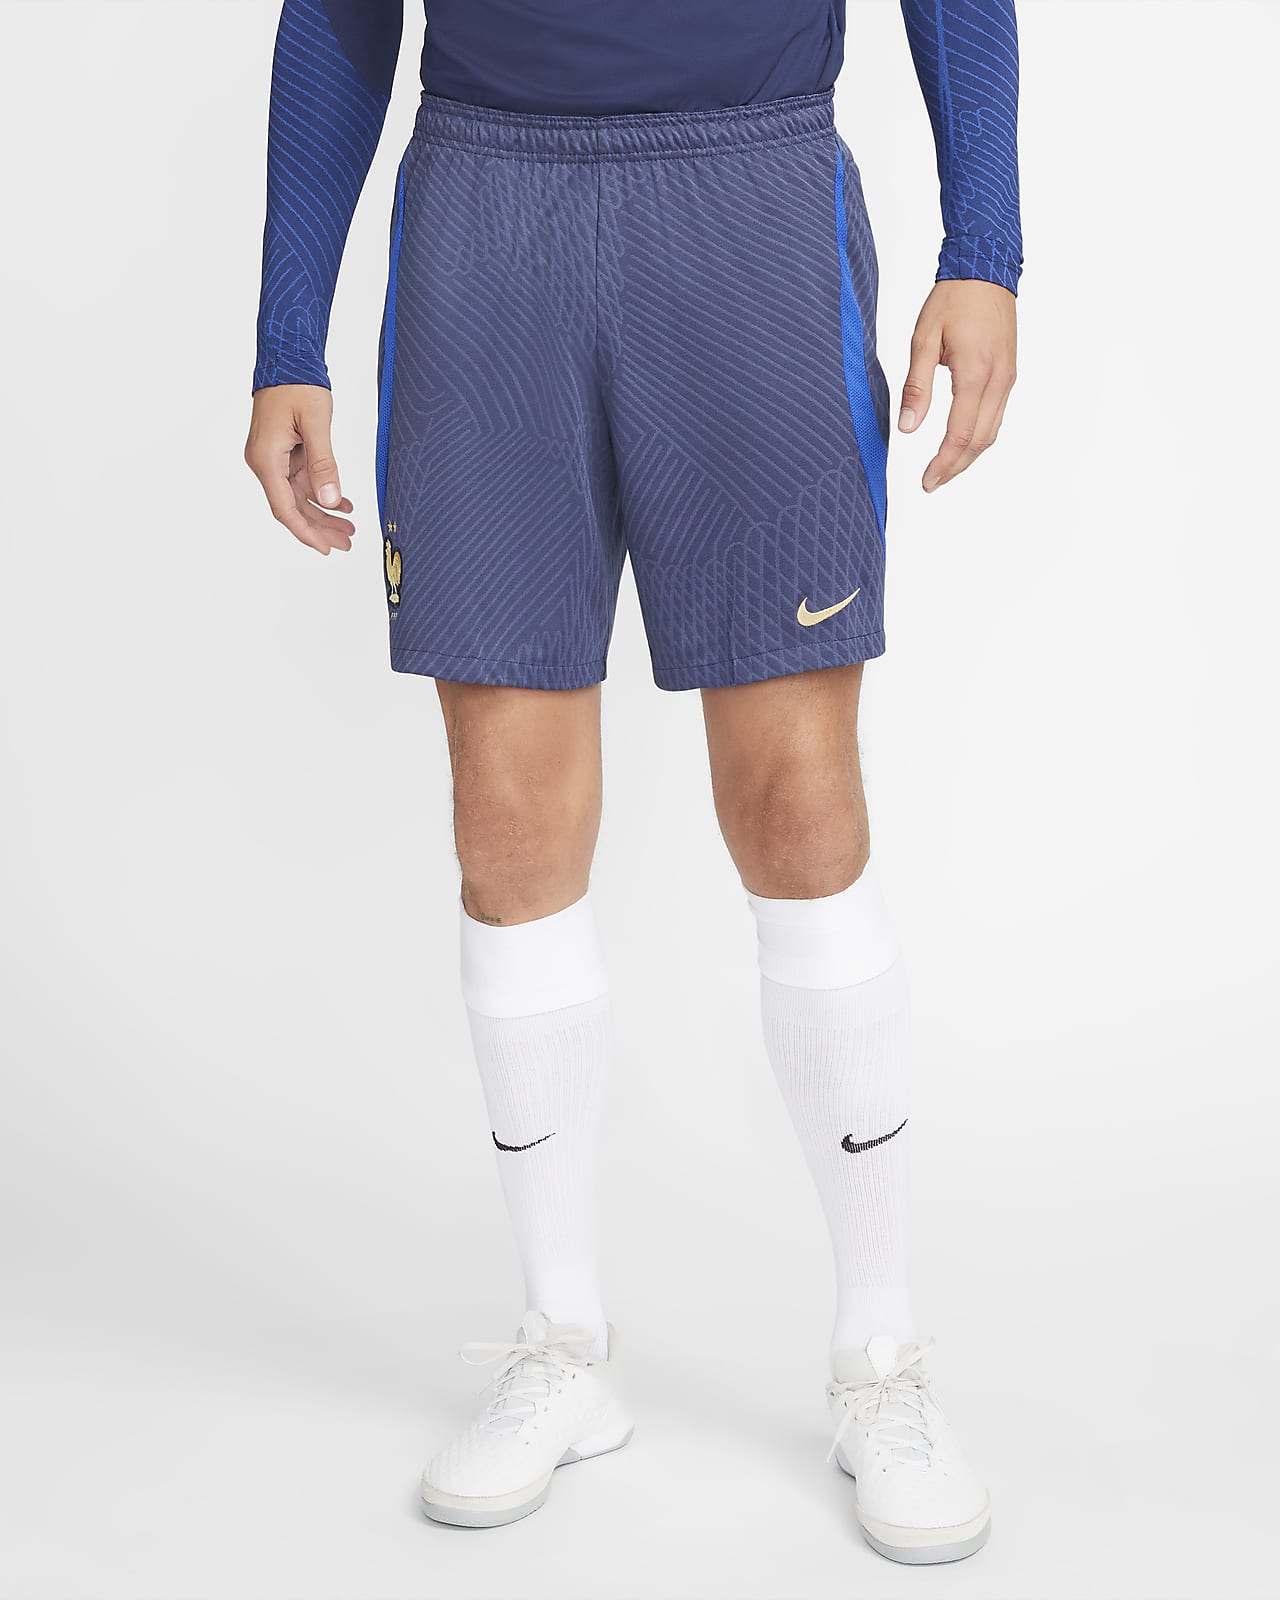 FFF Strike Men's Nike Dri-FIT Knit Football Shorts